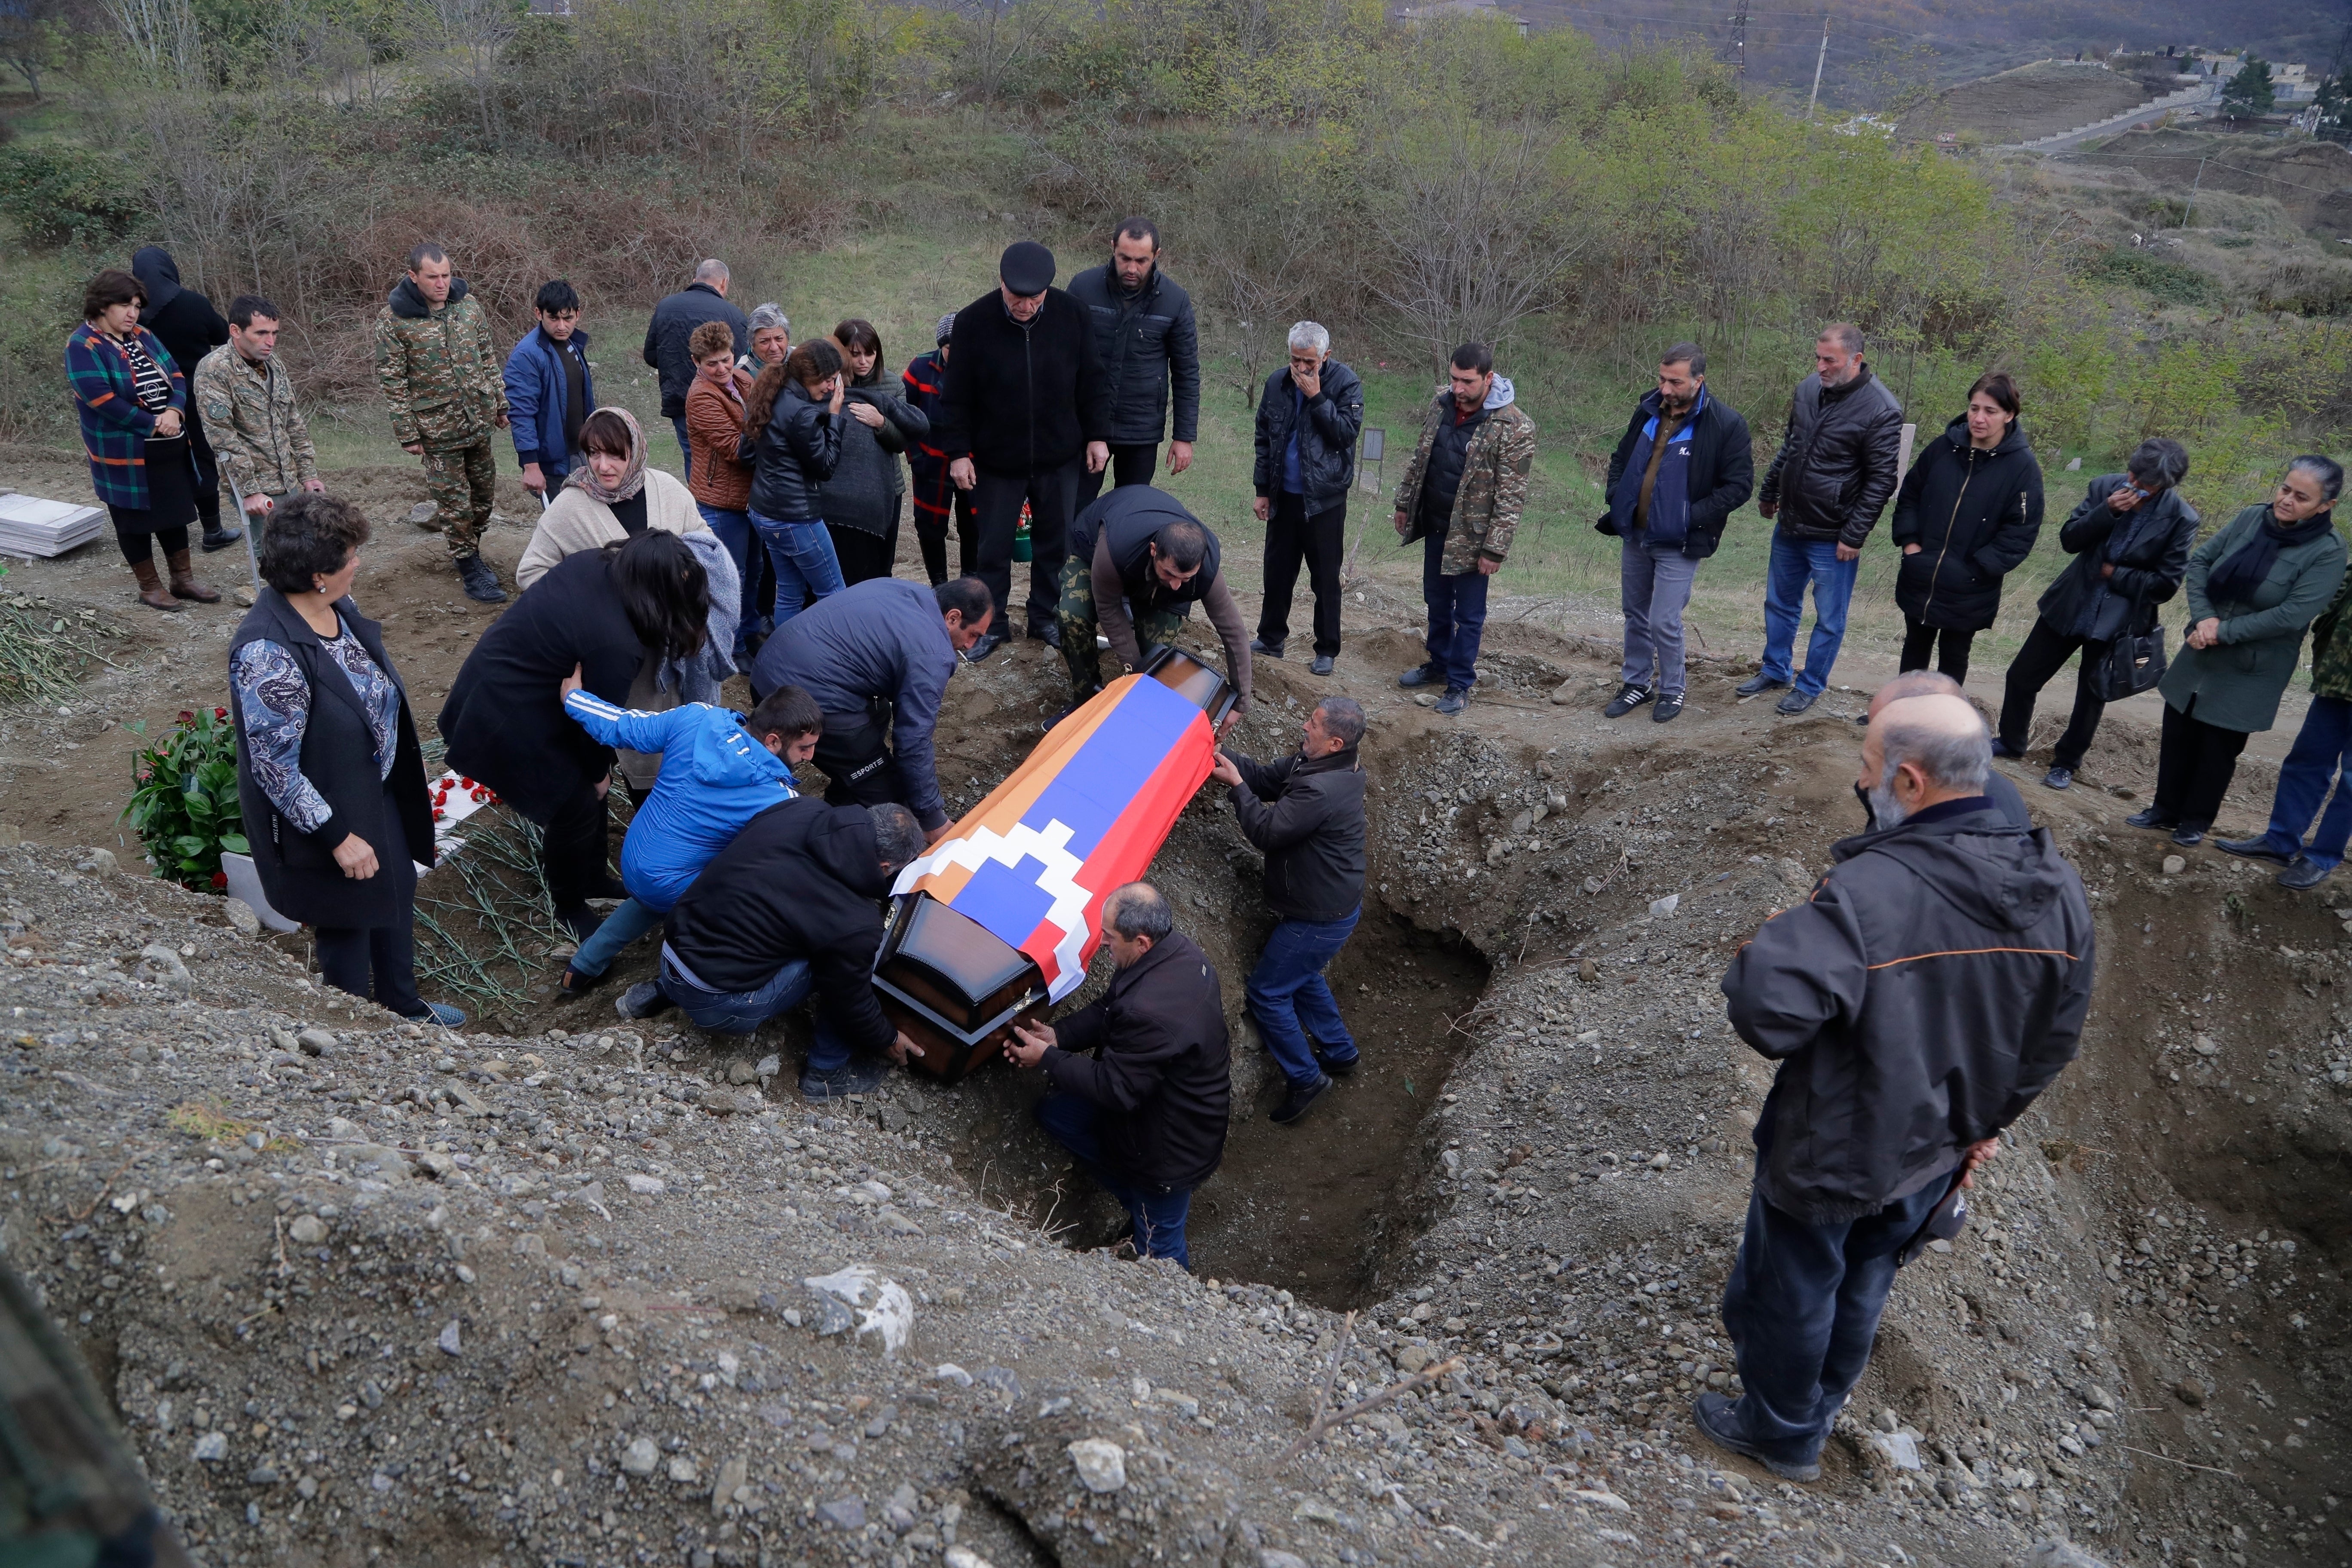 Familiares y amigos sepultan al soldado armenio Mkhitar Beglarian, quien murió en los enfrentamientos entre Armenia y Azerbaiyán en la región separatista de Nagorno-Karabakh, el 15 de noviembre de 2020 en el cementerio de Stepanakert.